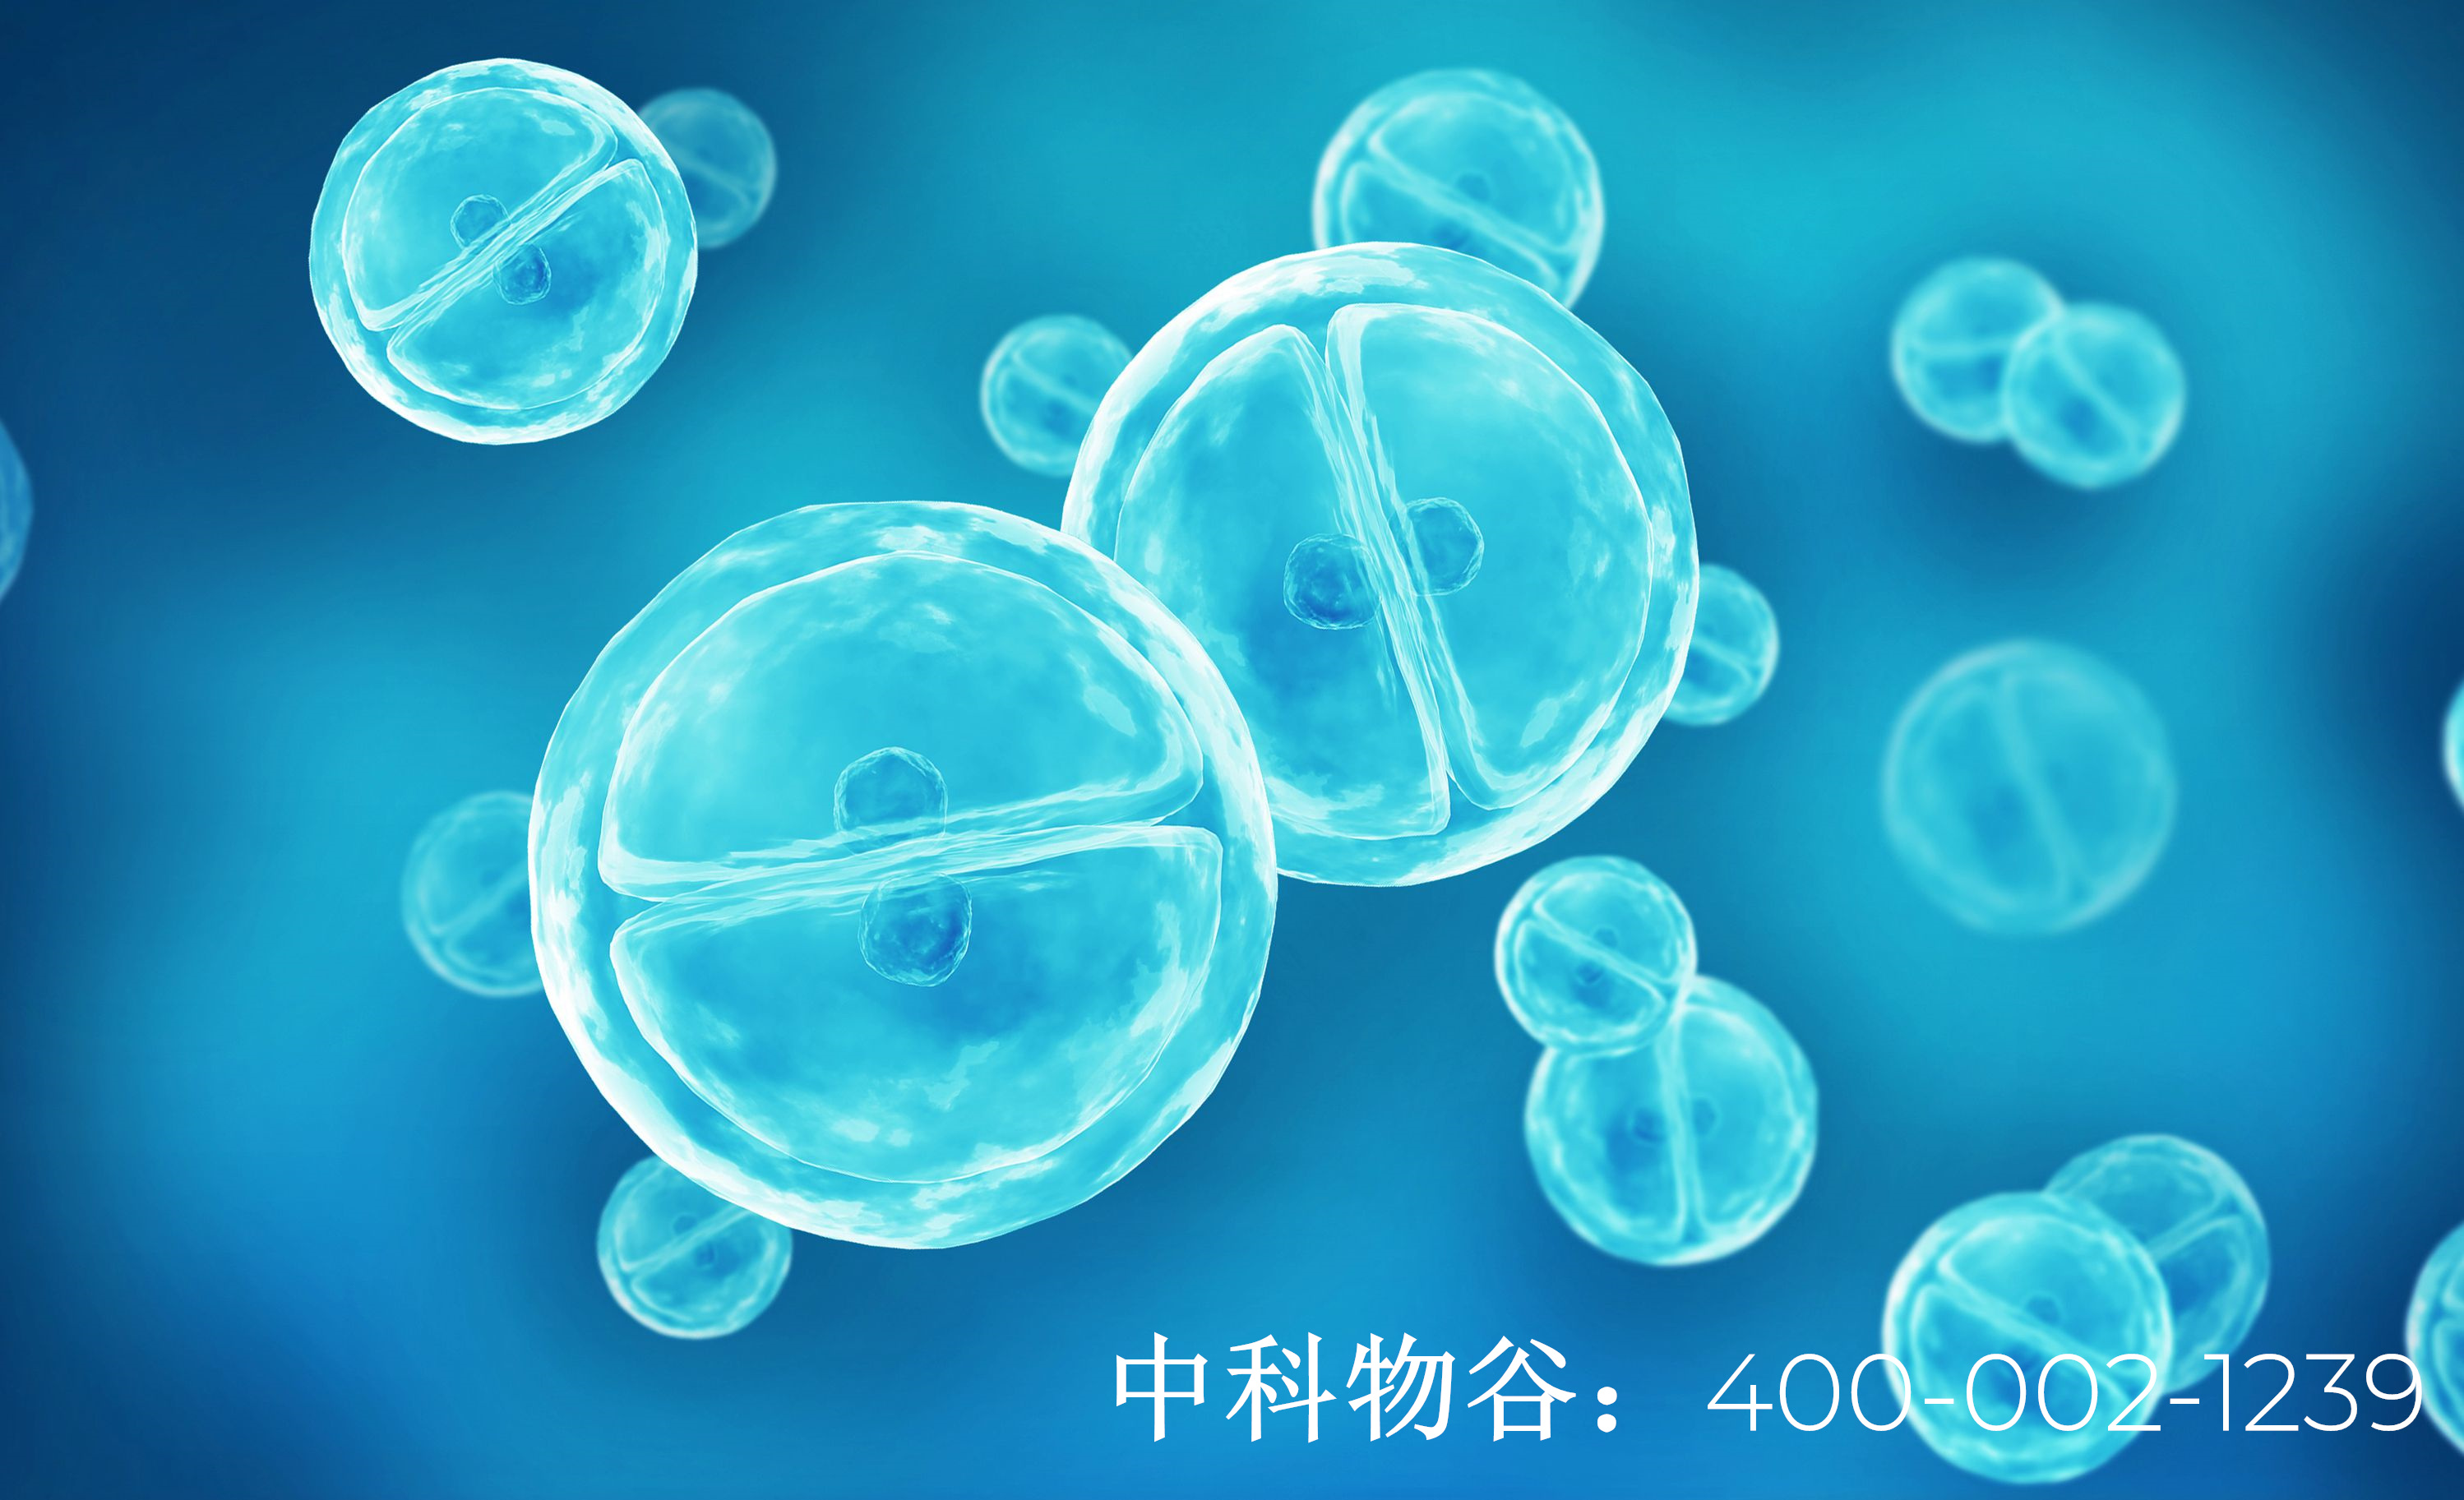 中国批准的干细胞机构-中科物谷干细胞